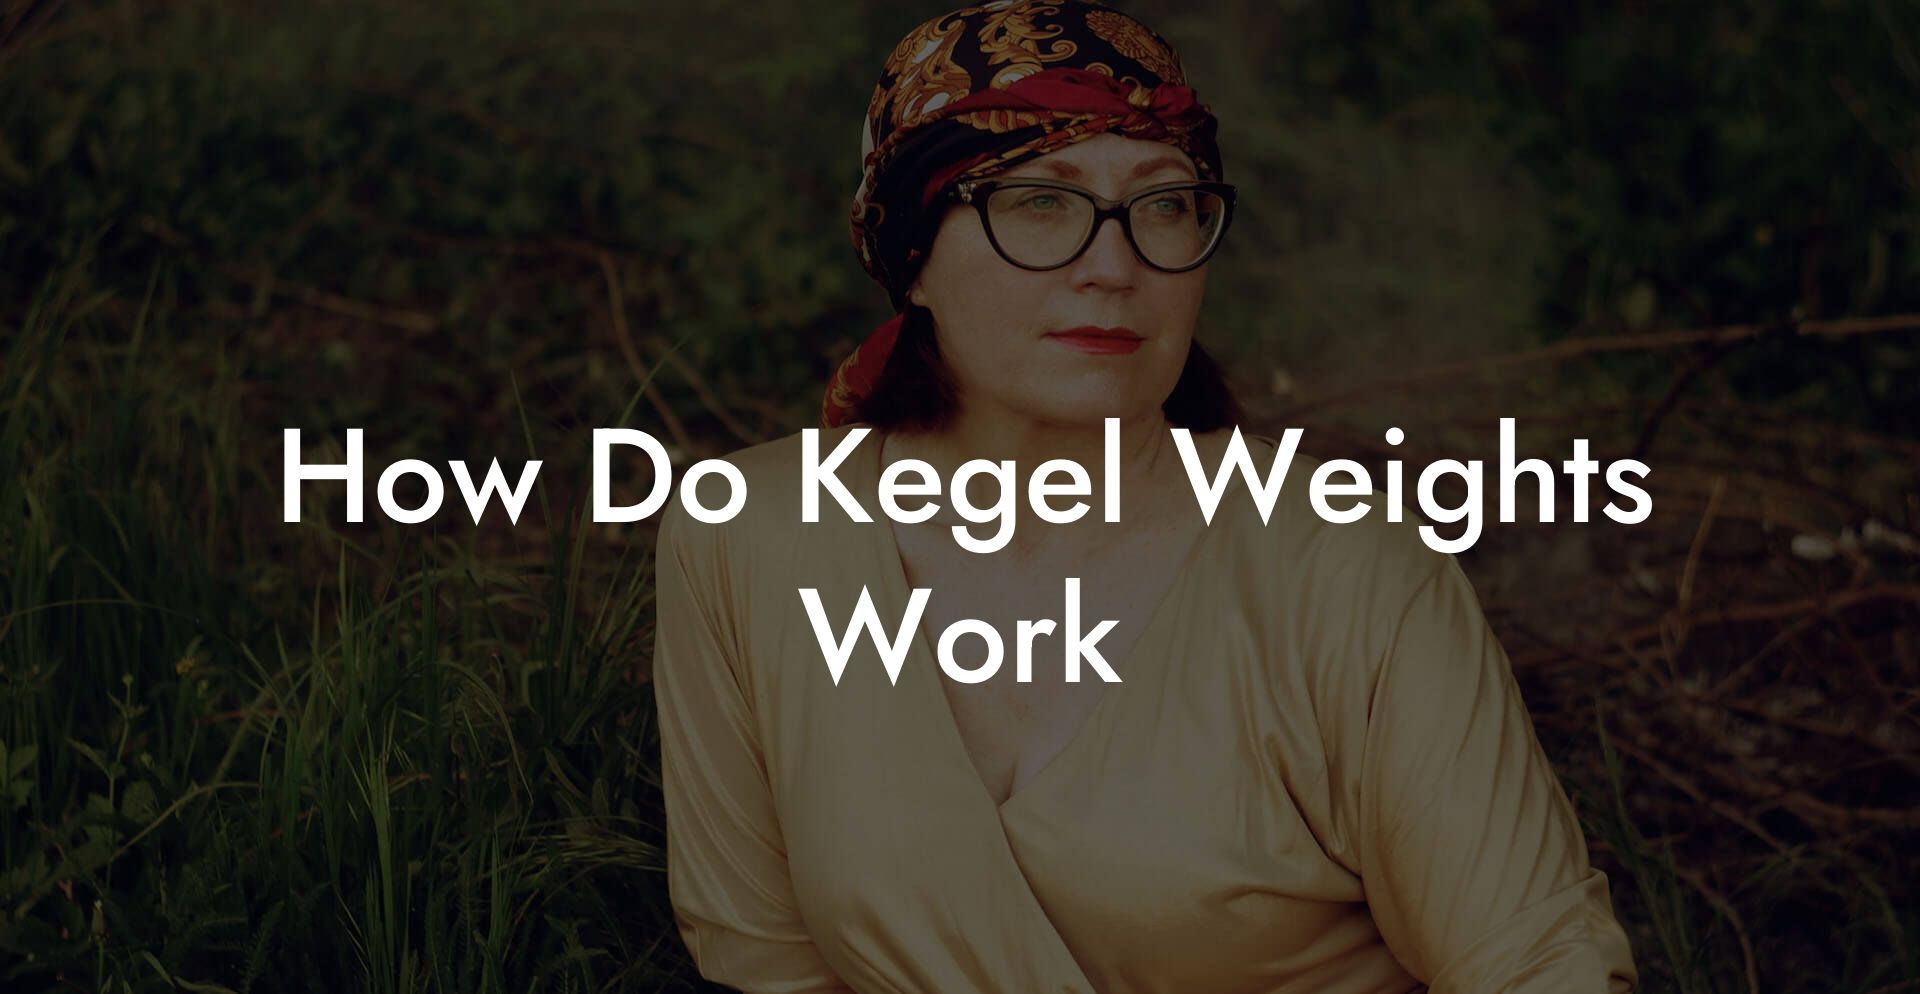 How Do Kegel Weights Work